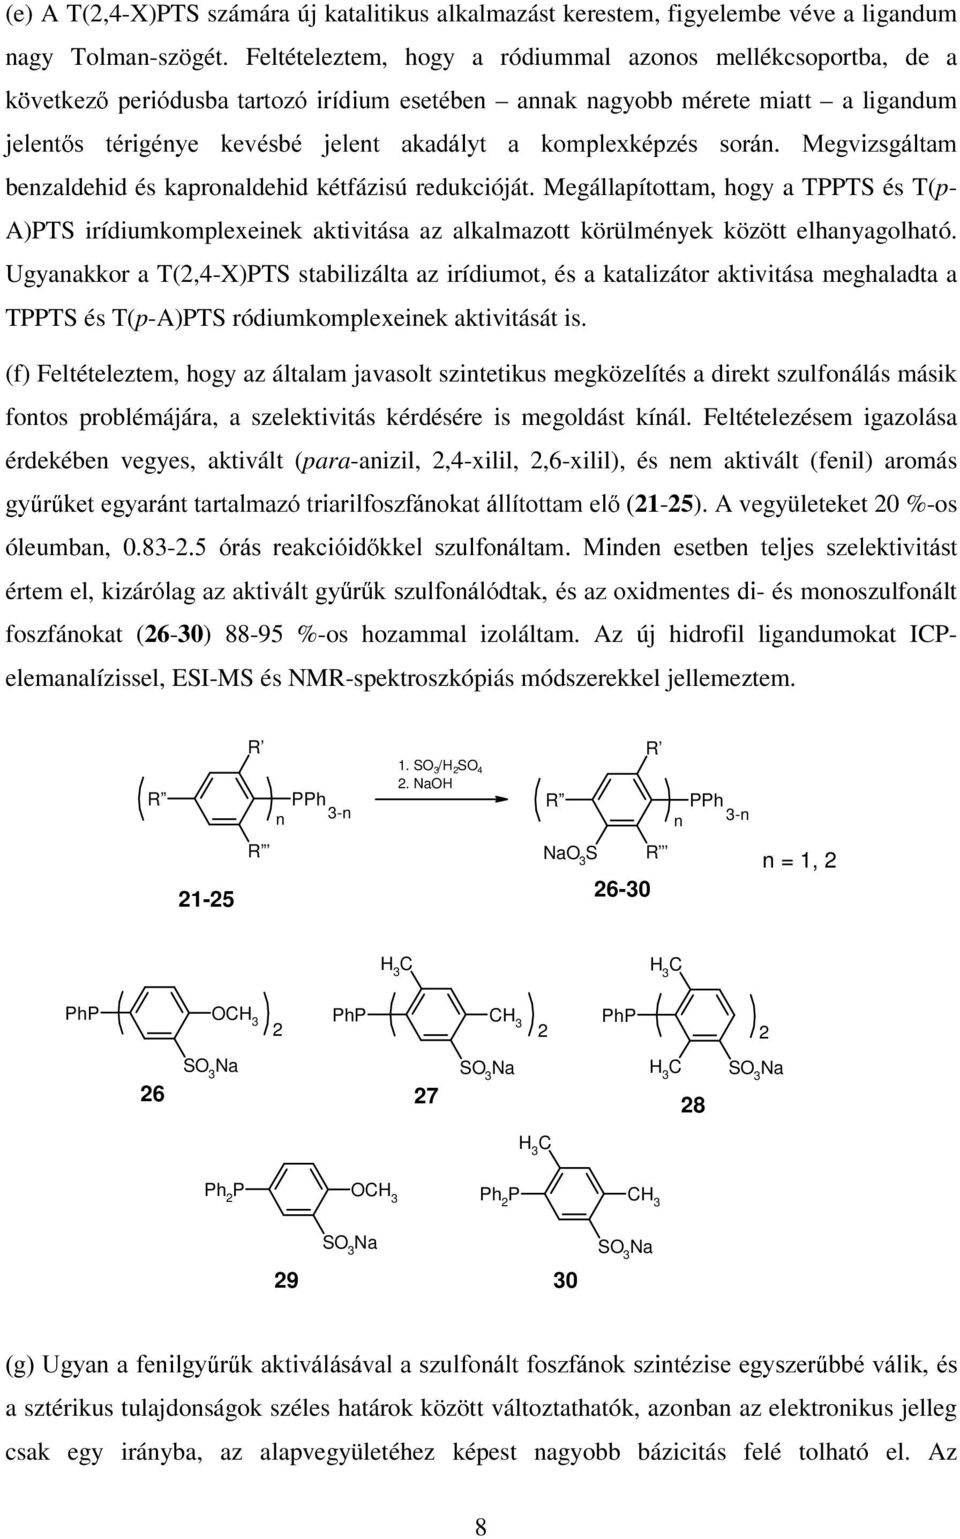 0HJYL]VJiWD benzaldehid és kapronaldehid kétfázisú redukcióját. Megállapítottam, hogy a TT és T(p- A)T irídiumkomplexeinek aktivitása az alkalmazott körülmények között elhanyagolható.